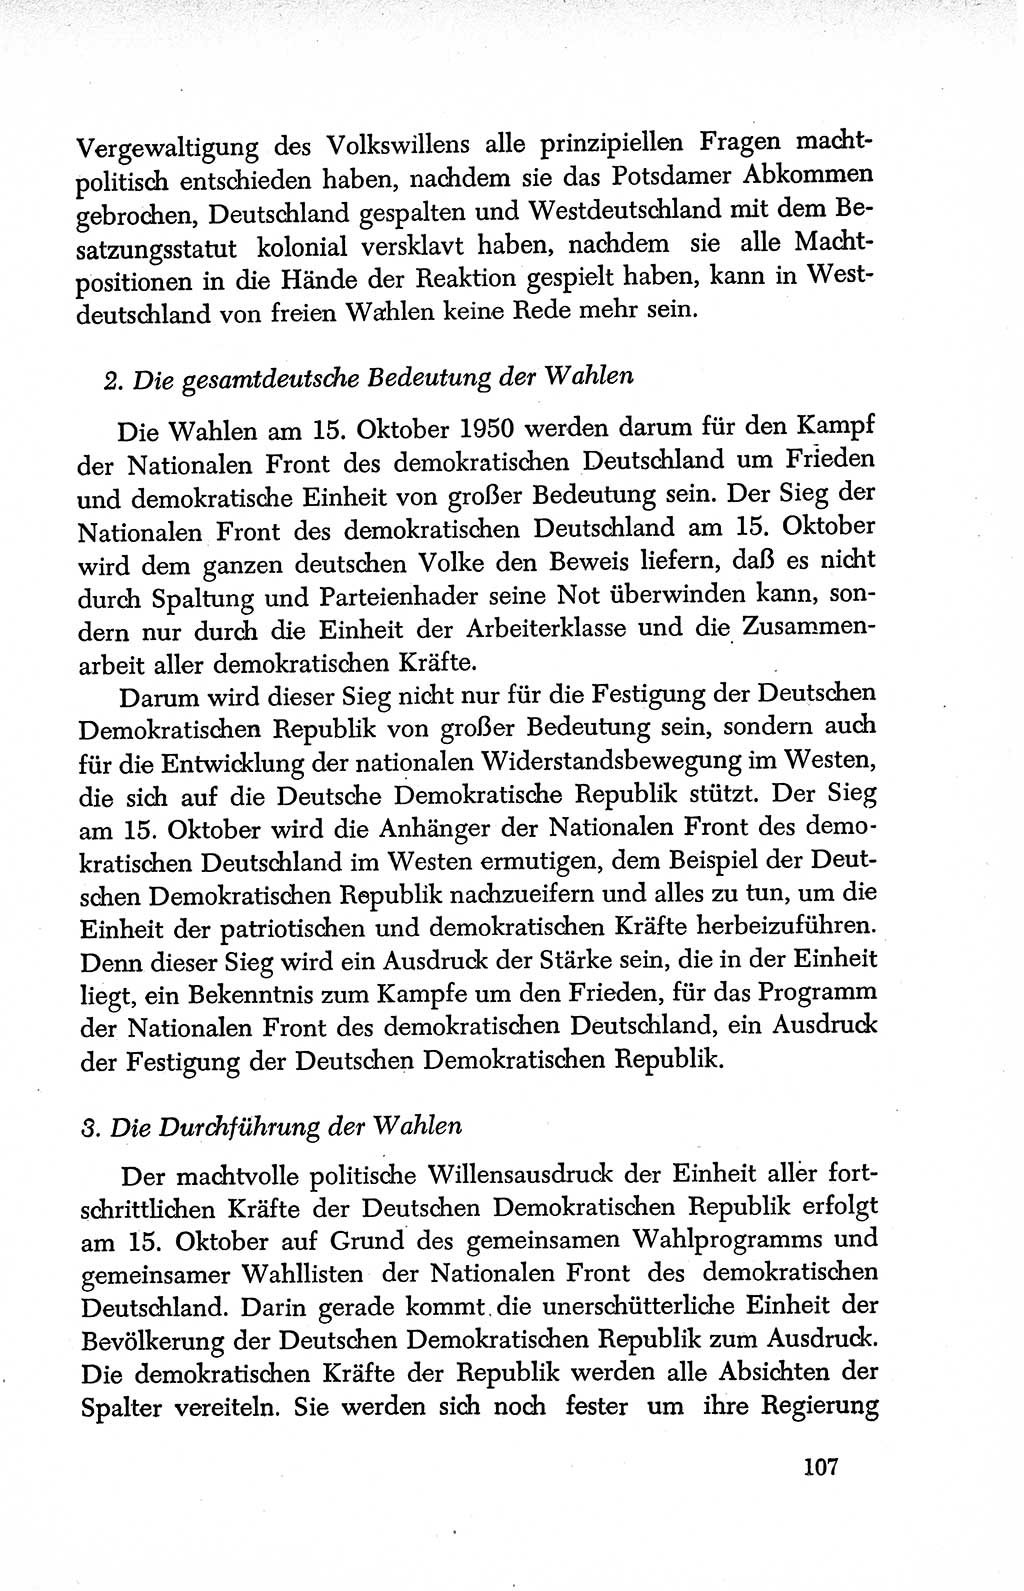 Dokumente der Sozialistischen Einheitspartei Deutschlands (SED) [Deutsche Demokratische Republik (DDR)] 1950-1952, Seite 107 (Dok. SED DDR 1950-1952, S. 107)